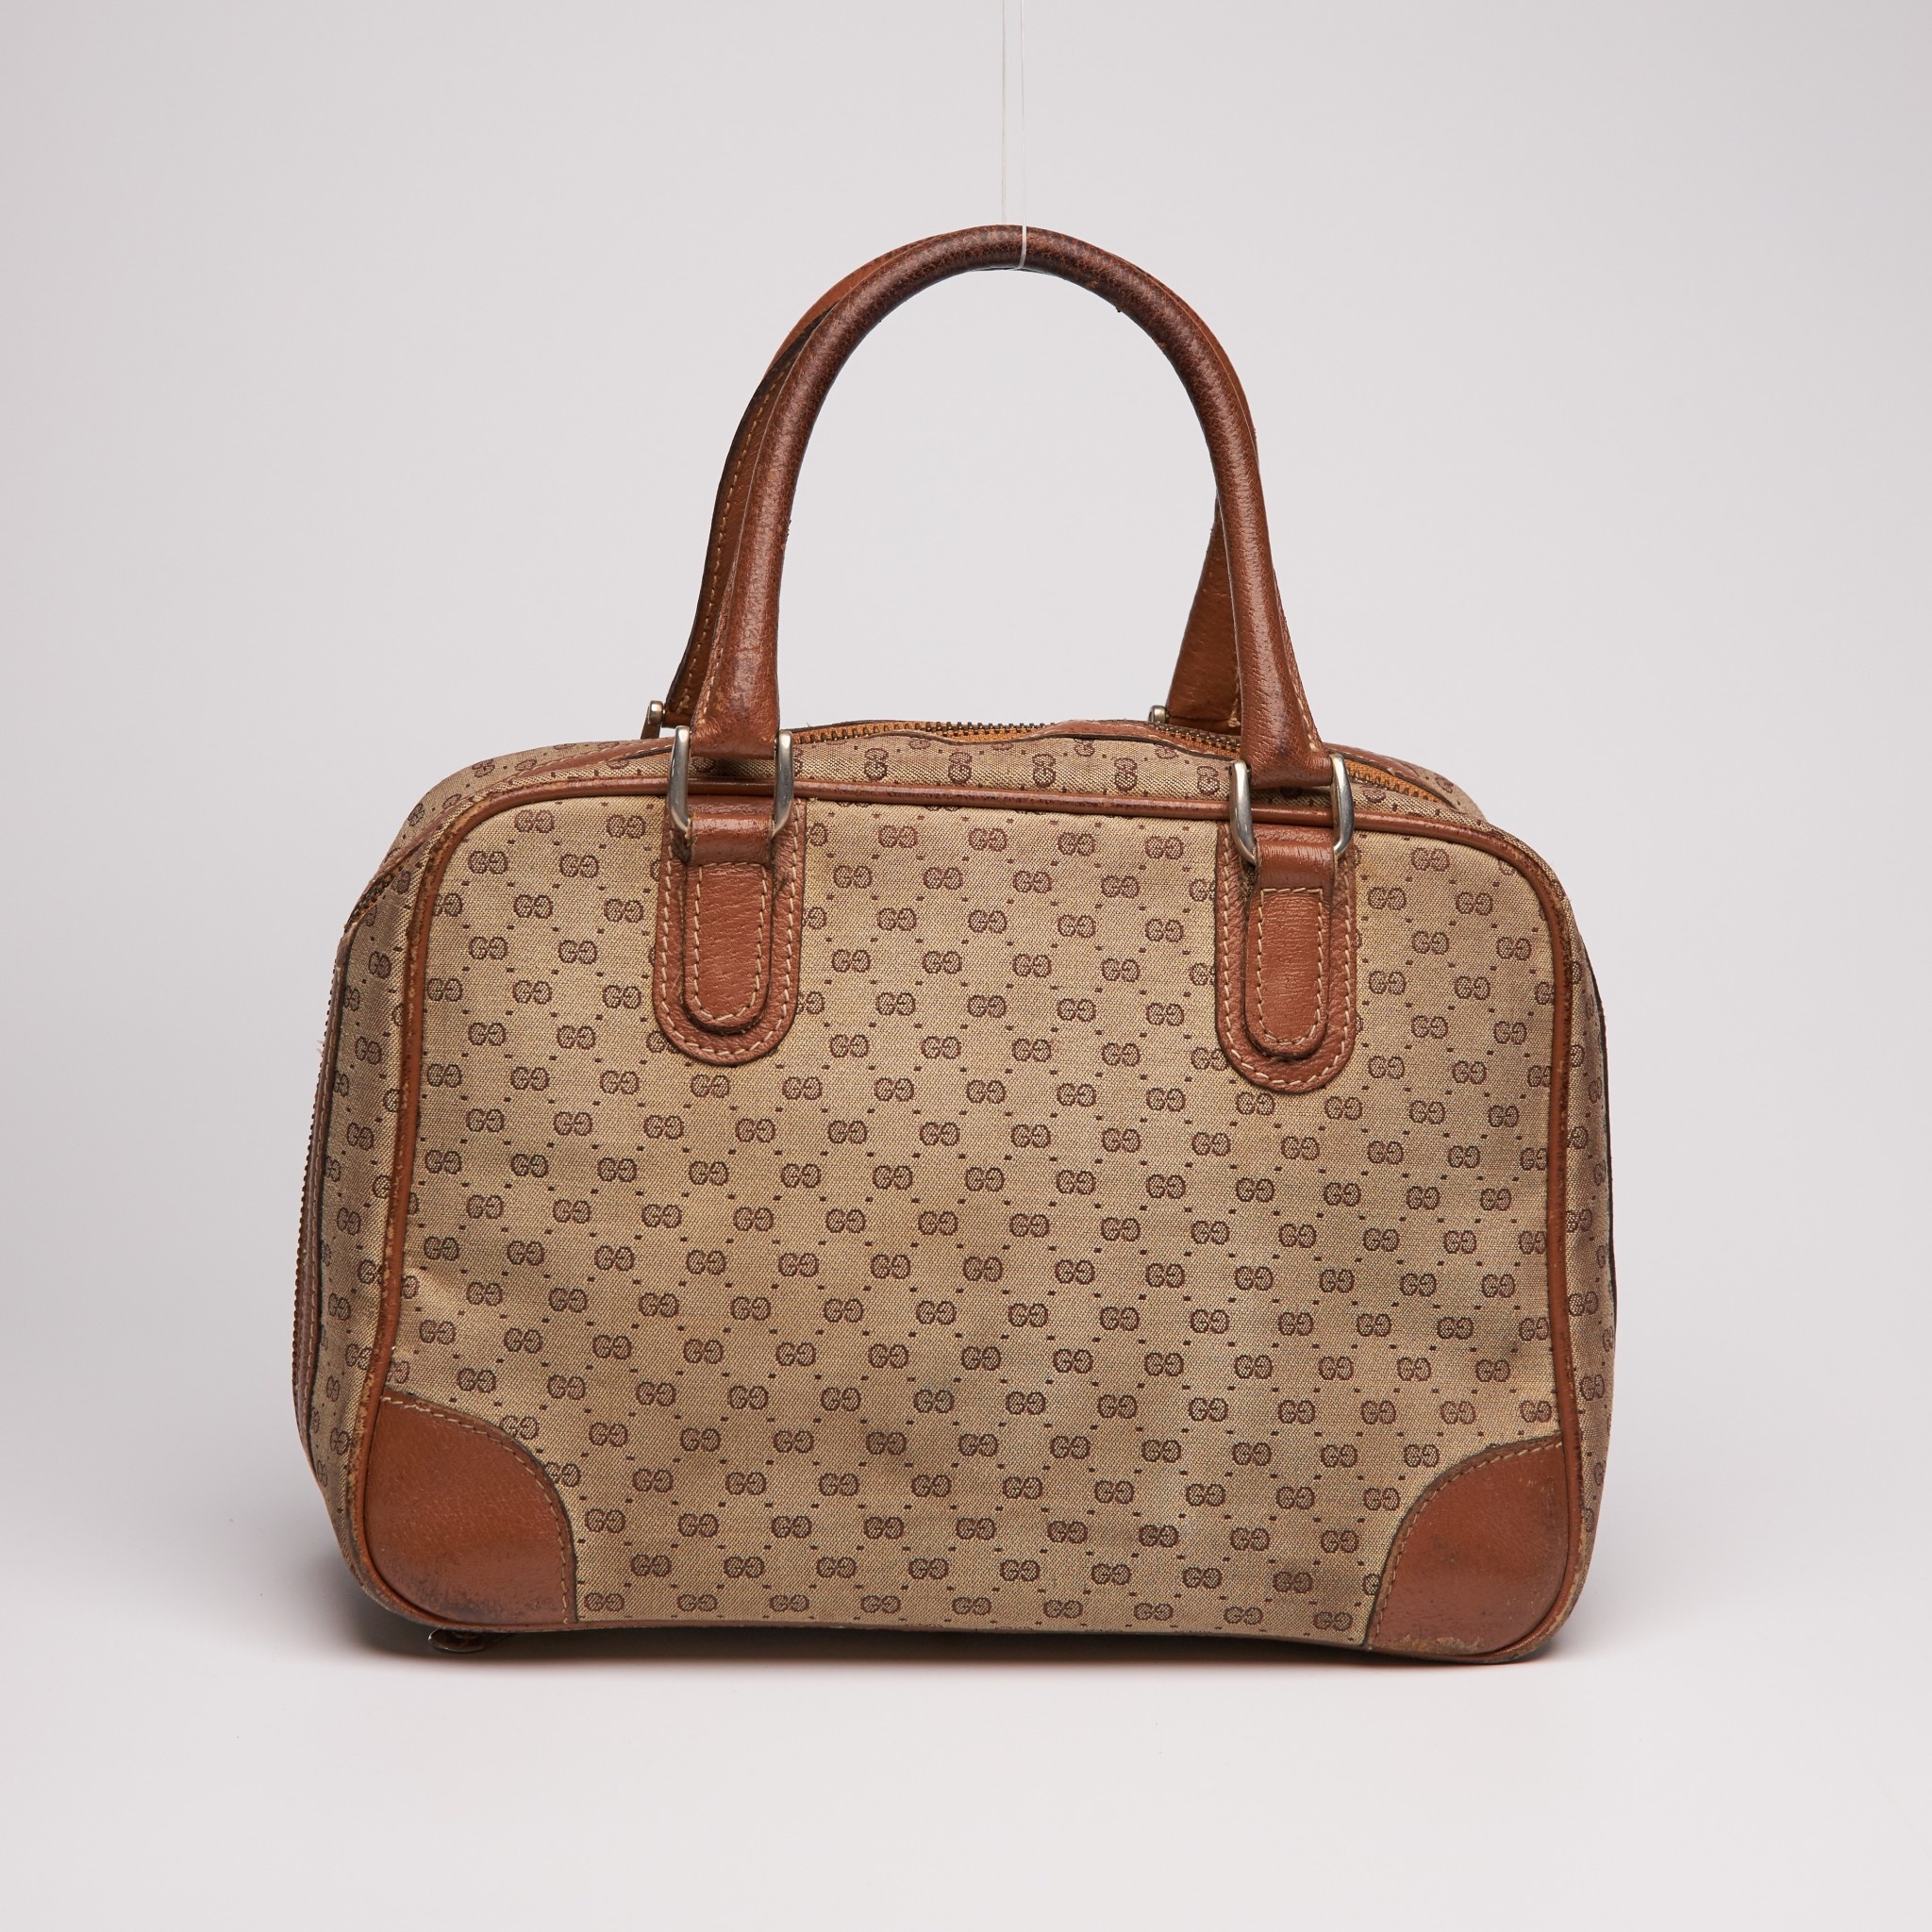 Rare Gucci Handbag 